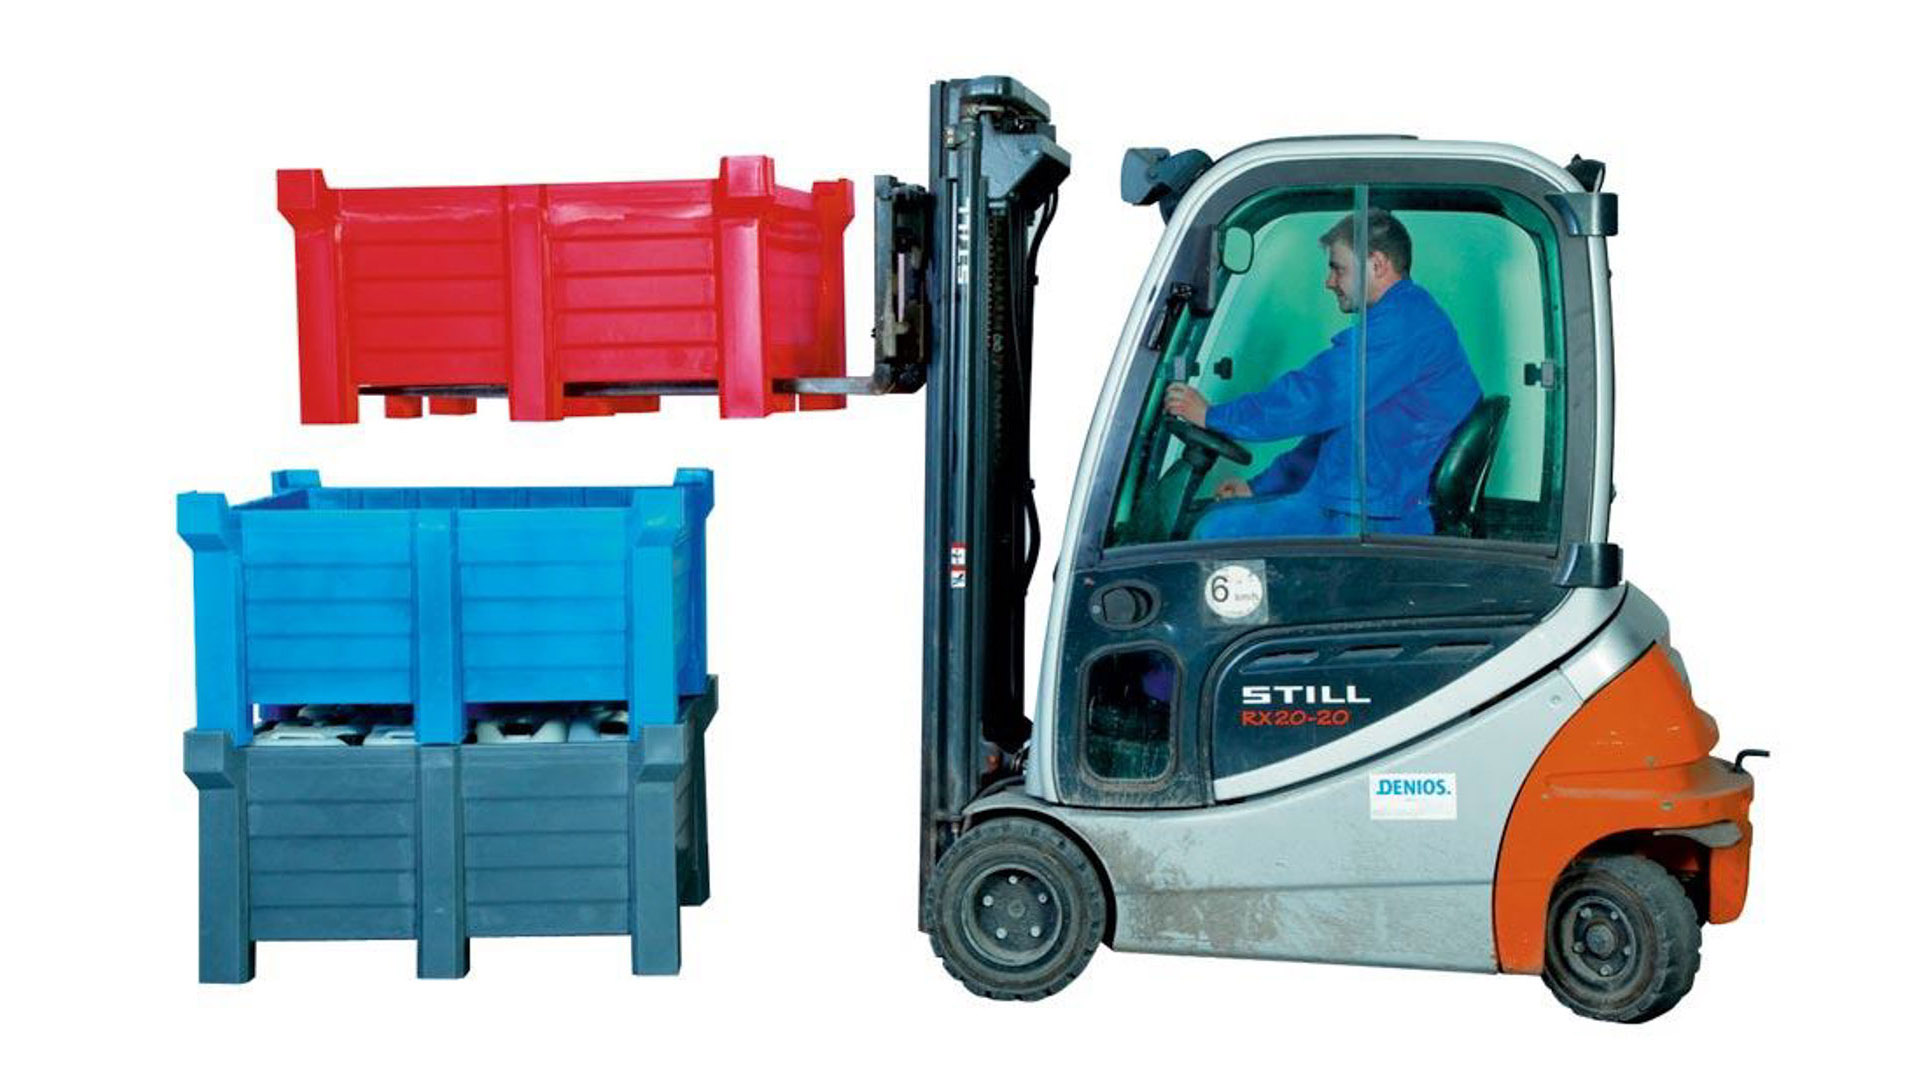 Transportbehälter PE - 400 l - 500 kg - 1260x1060x650 mm - stapelbar - Farbe blau